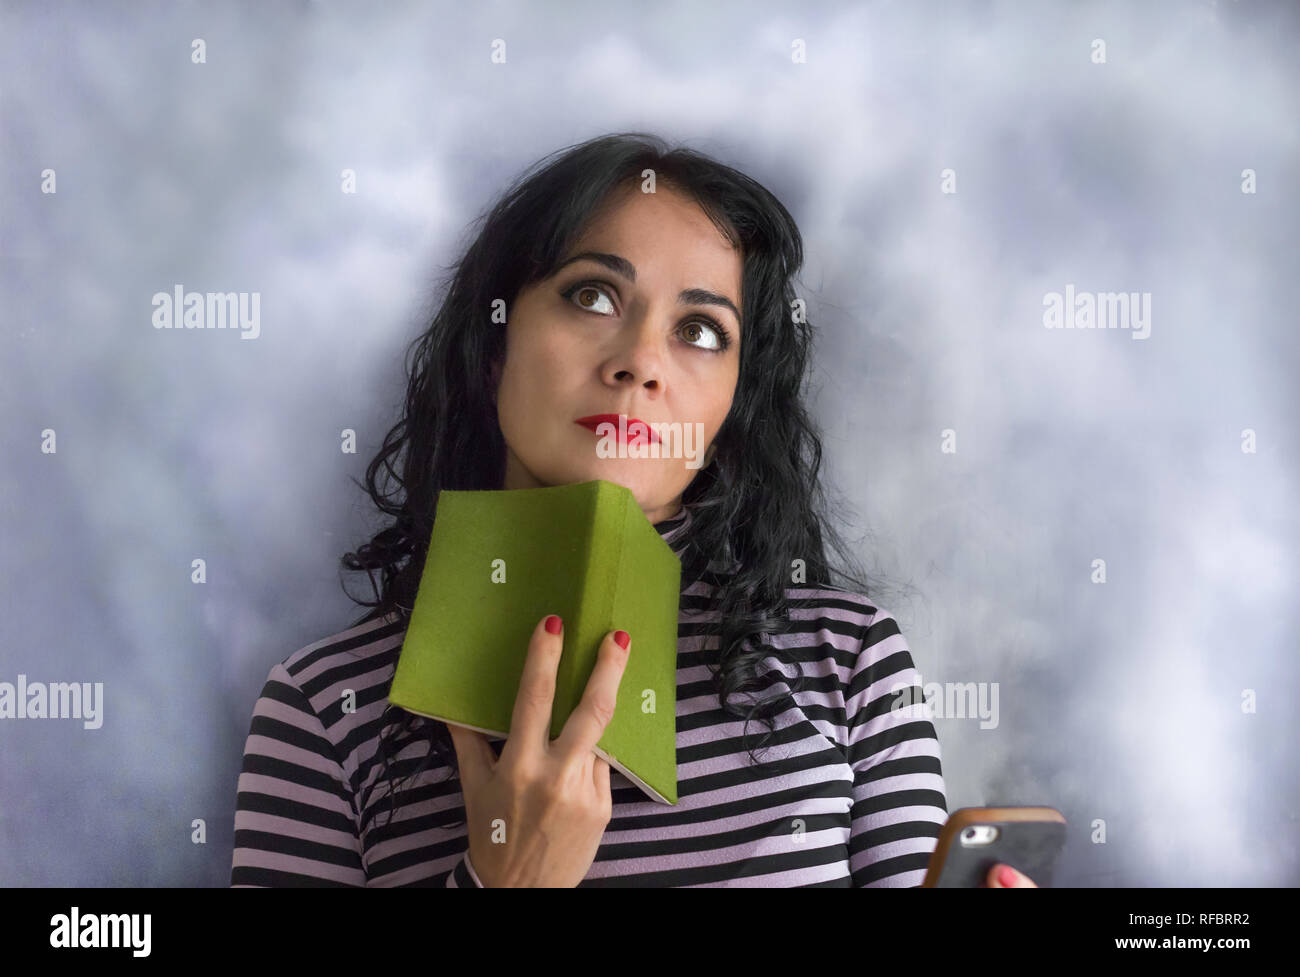 Bruna giovane donna con il maglione a strisce con un libro sul suo mento pensando ad una questione, isolata su uno sfondo grigio Foto Stock